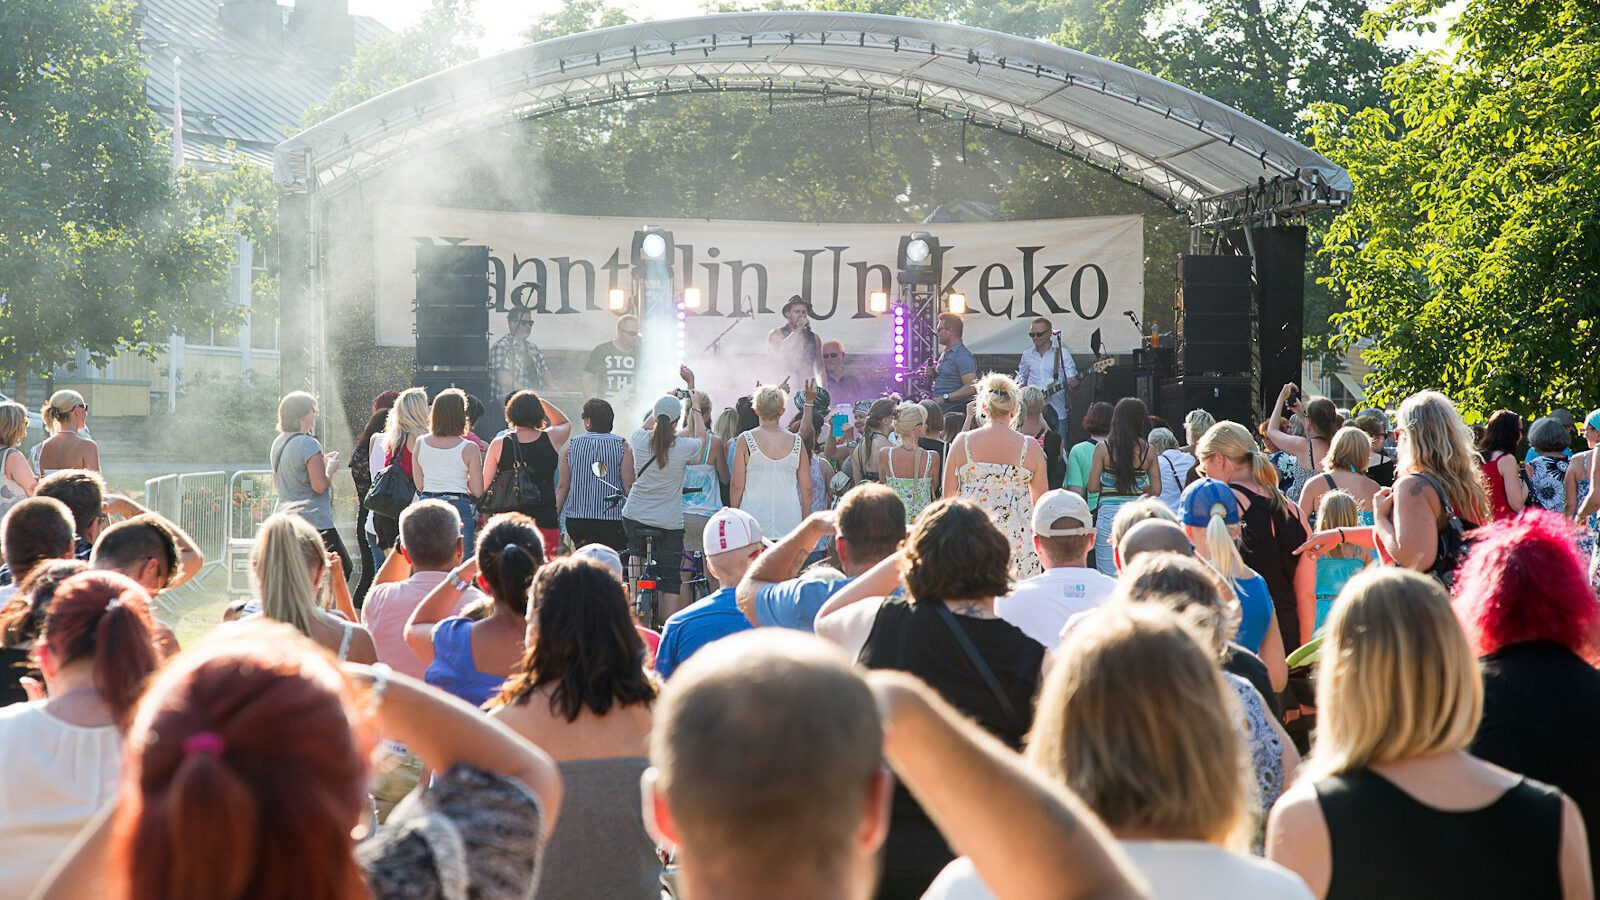 Puistossa olevan Naantalin Unikeko -lava, jolla esiintyjä ja jonka edessä on iso joukko ihmisiä.